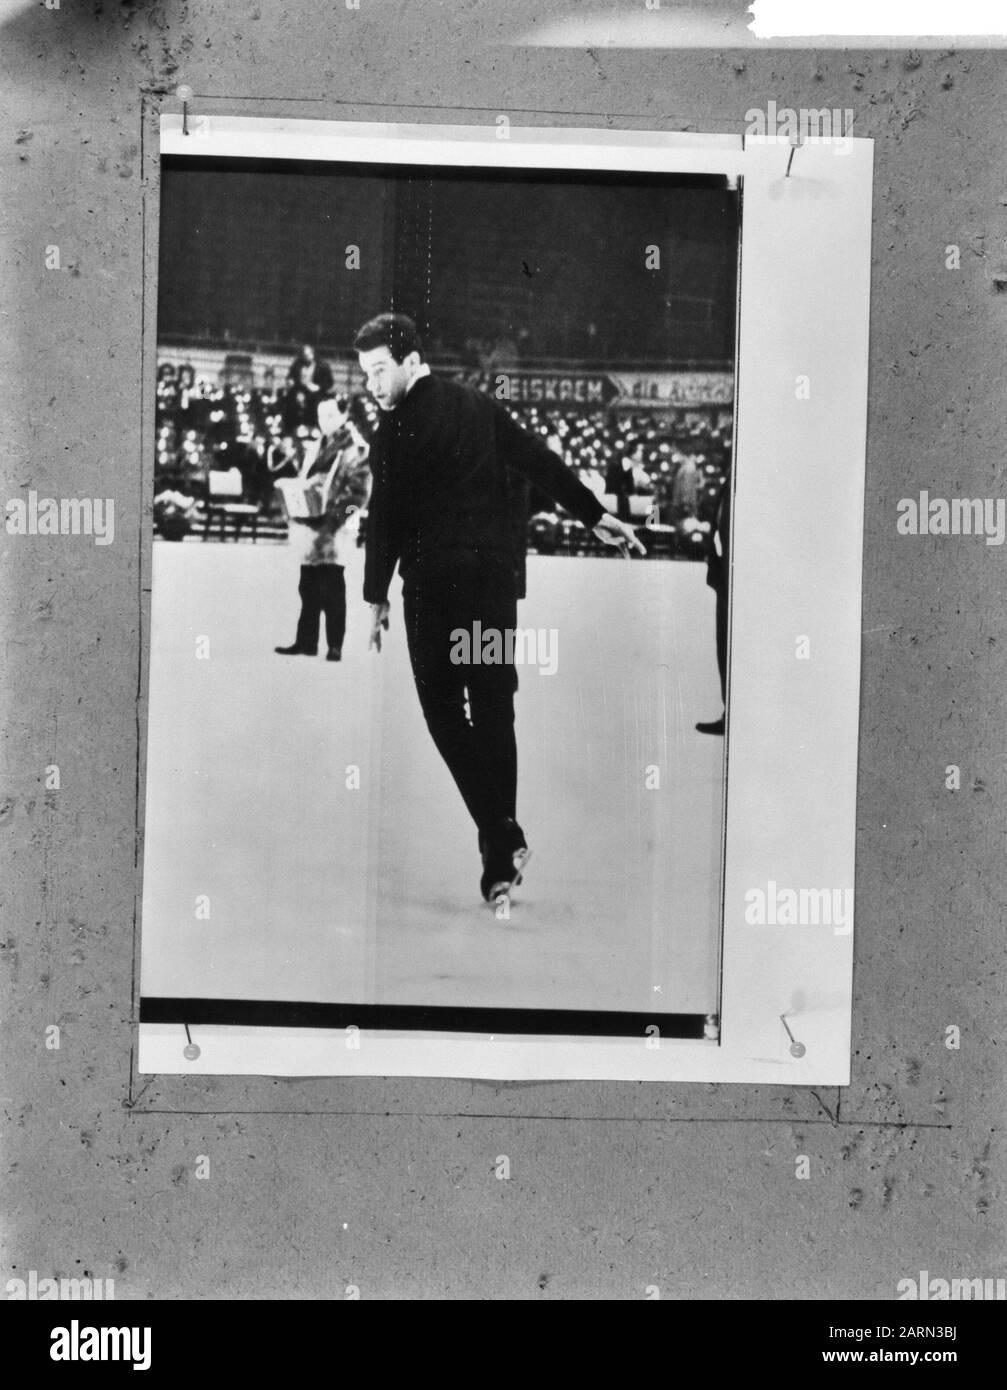 Championnats du monde d'art à Dortmund, Schnelldorfer durant les figures obligatoires Date : 26 février 1964 lieu : Dortmund mots clés : lutte contre l'art, championnats du monde Banque D'Images